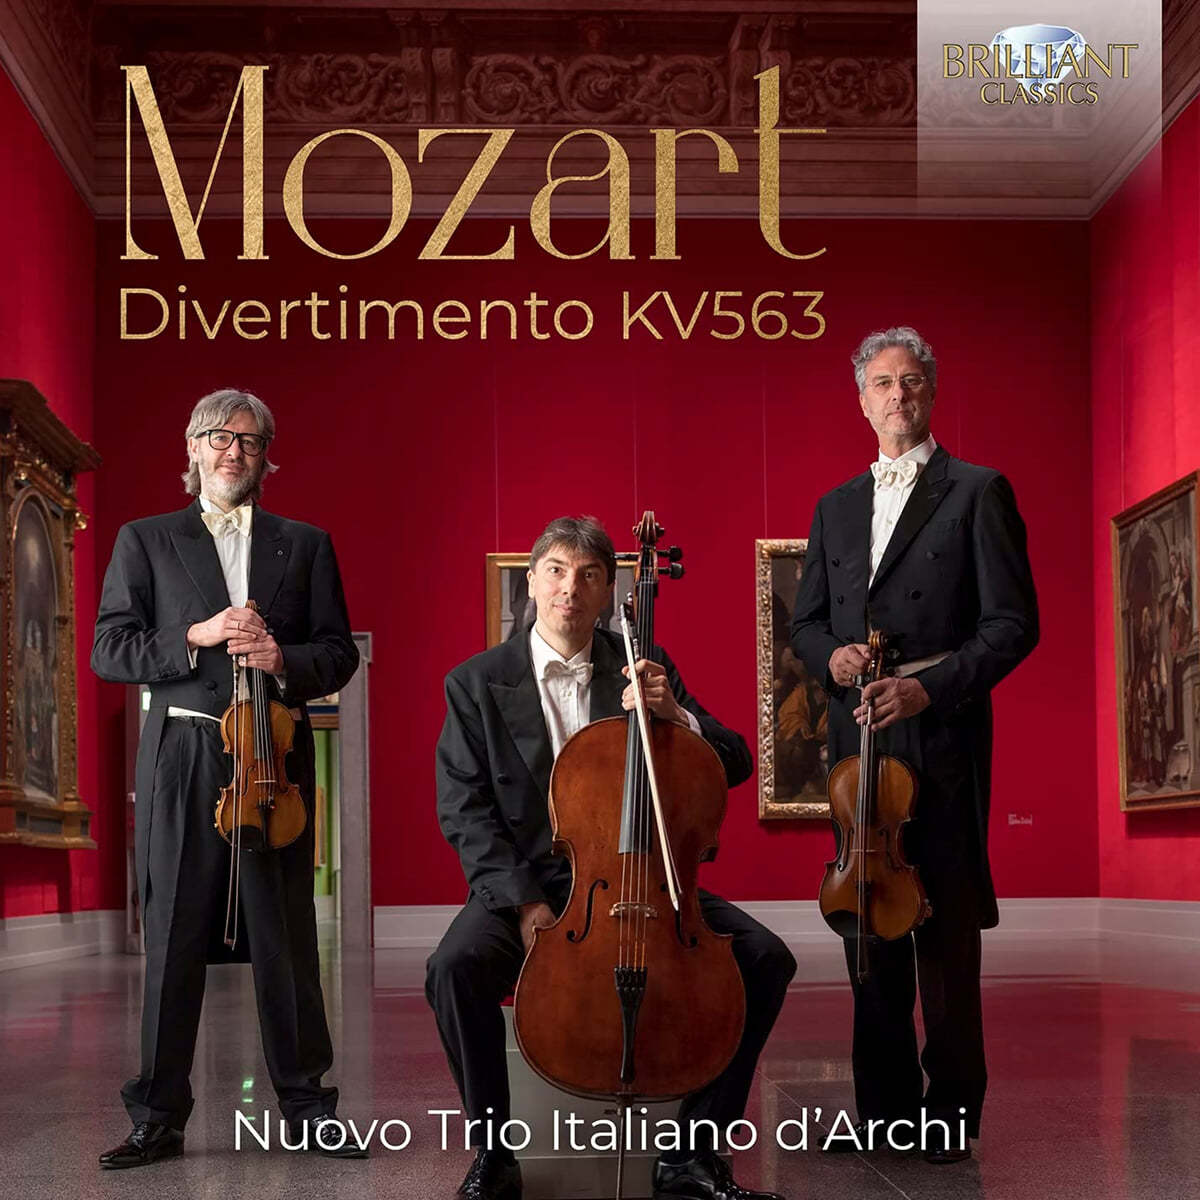 Nuovo Trio Italiano d'Arch 모차르트: 디베르티멘토, KV563 외 (Mozart: Divertimento KV563)